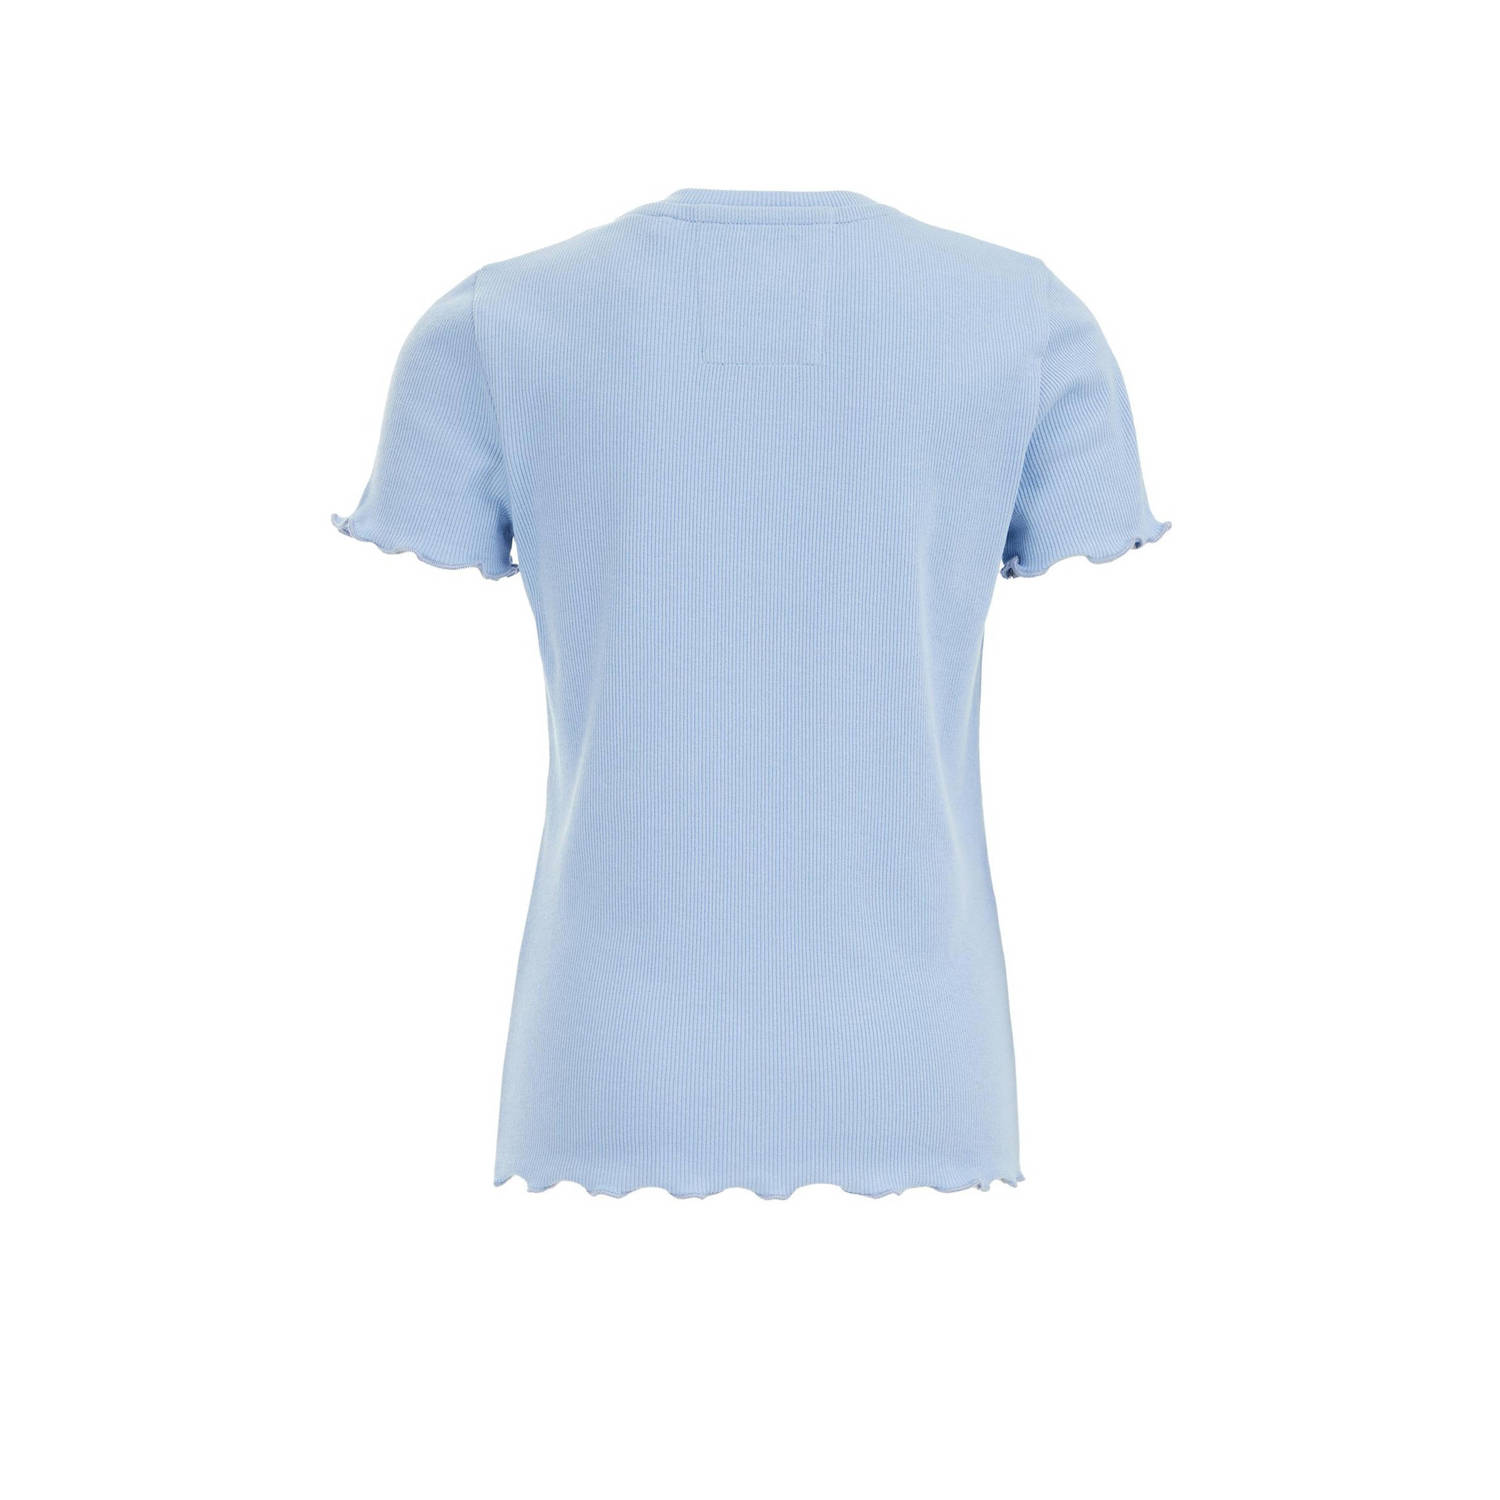 WE Fashion ribgebreid T-shirt nautical blue